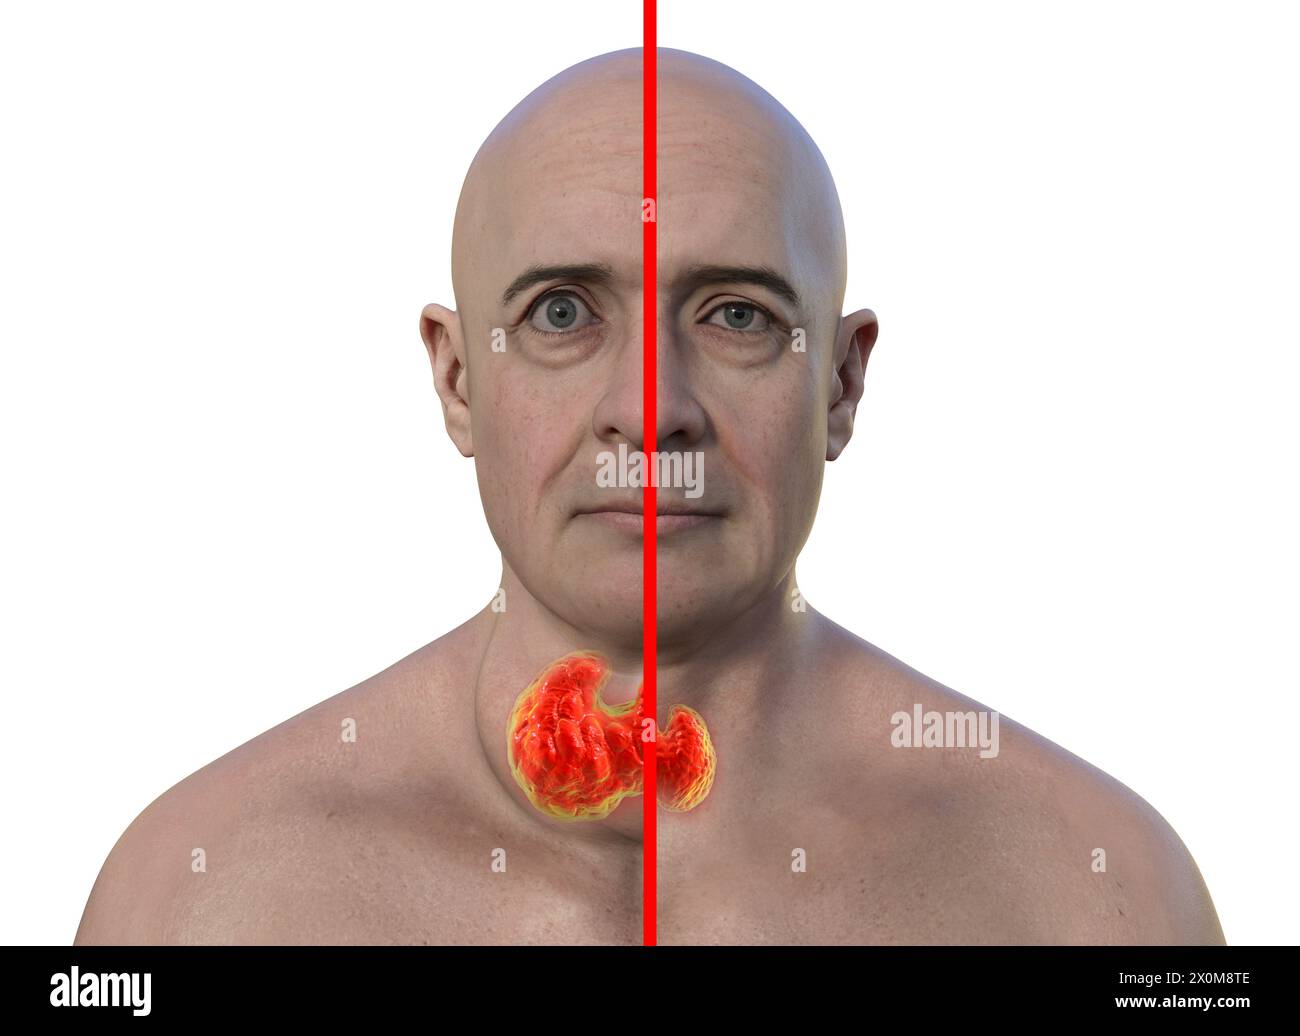 3D-Illustration eines Mannes mit einer vergrößerten Schilddrüse (Struma, Nackenbasis) und abnormer Vorwölbung der Augen (Exophthalmus), und derselbe Mann mit gesunder Schilddrüse und Augen zum Vergleich (rechts). Dies sind zwei Symptome einer überaktiven Schilddrüse, bekannt als Hyperthyreose. Stockfoto